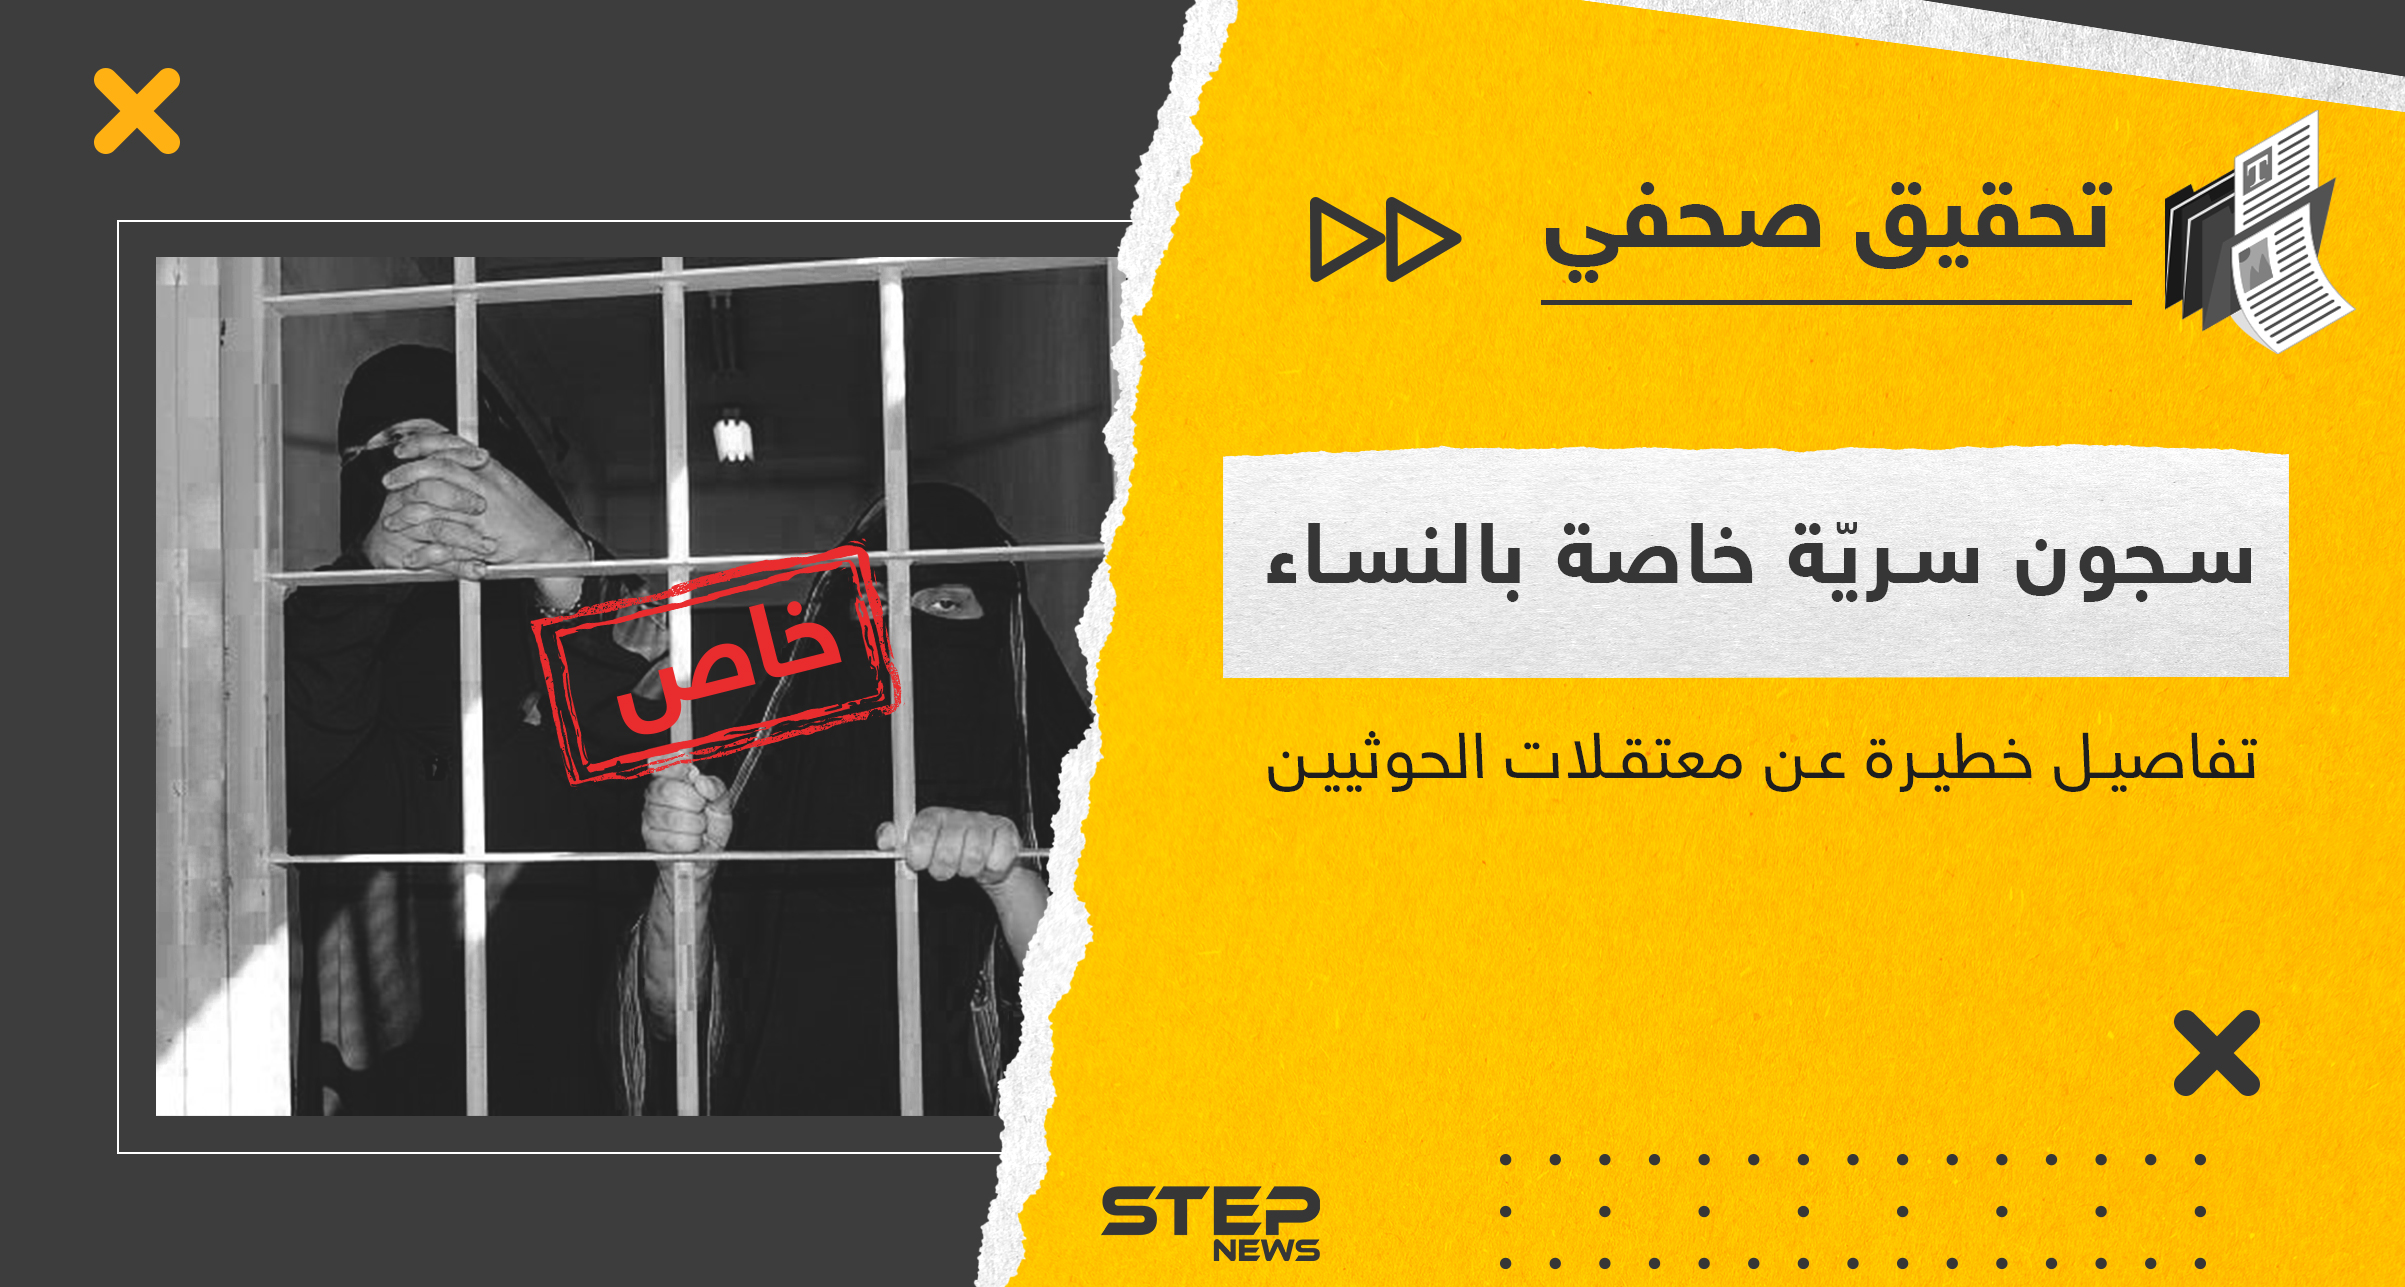 نزع الأظافر واغتصاب النساء بسجون سريّة.. لِمَ تعتقل جماعة الحوثي النساء اليمنيات وكيف؟؟